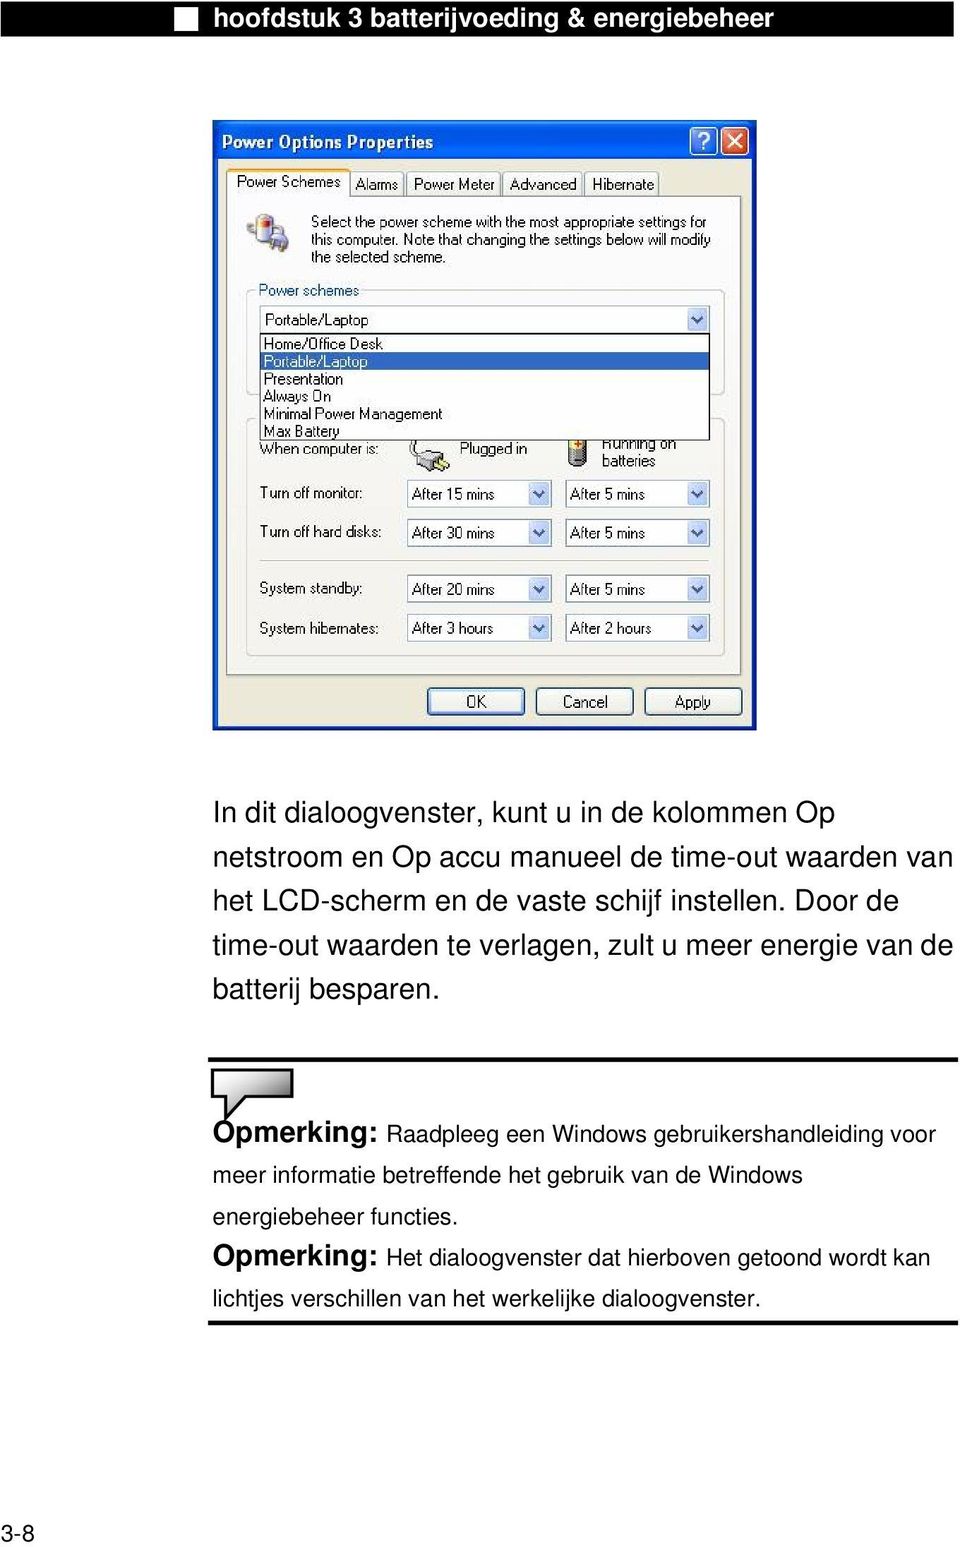 Opmerking: Raadpleeg een Windows gebruikershandleiding voor meer informatie betreffende het gebruik van de Windows